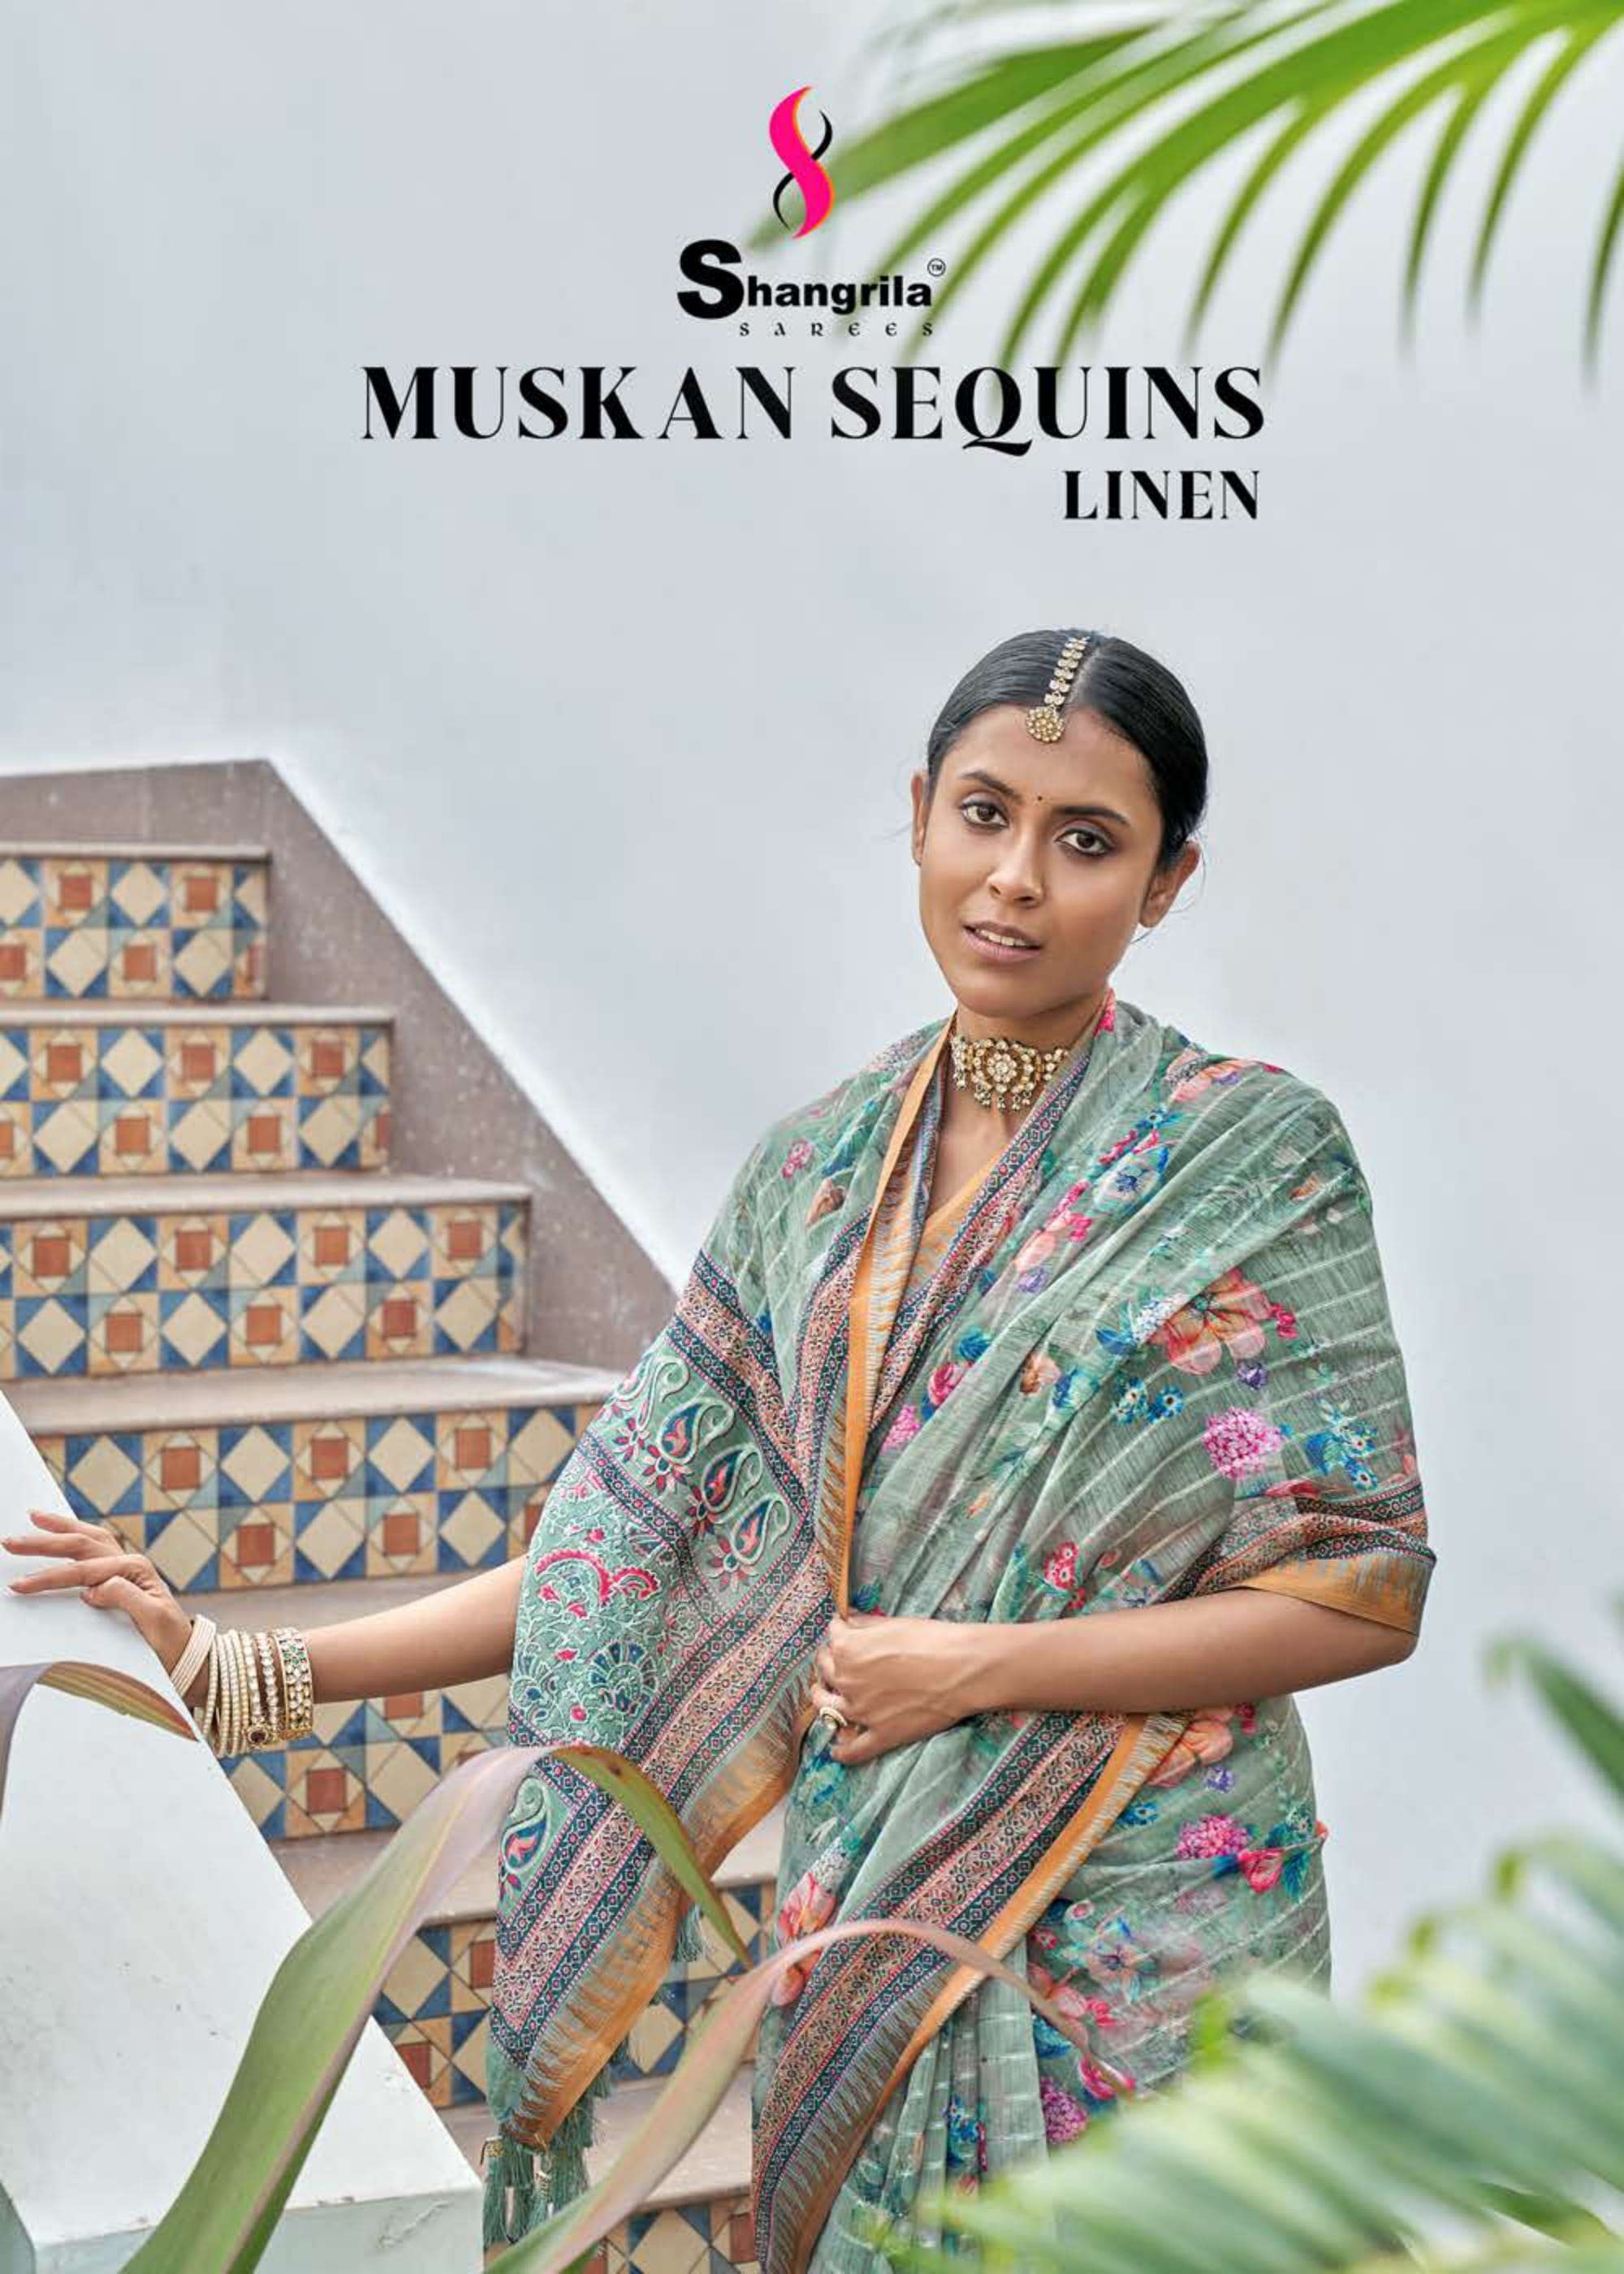 shangrila muskan sequins linen soft fabrics sarees 